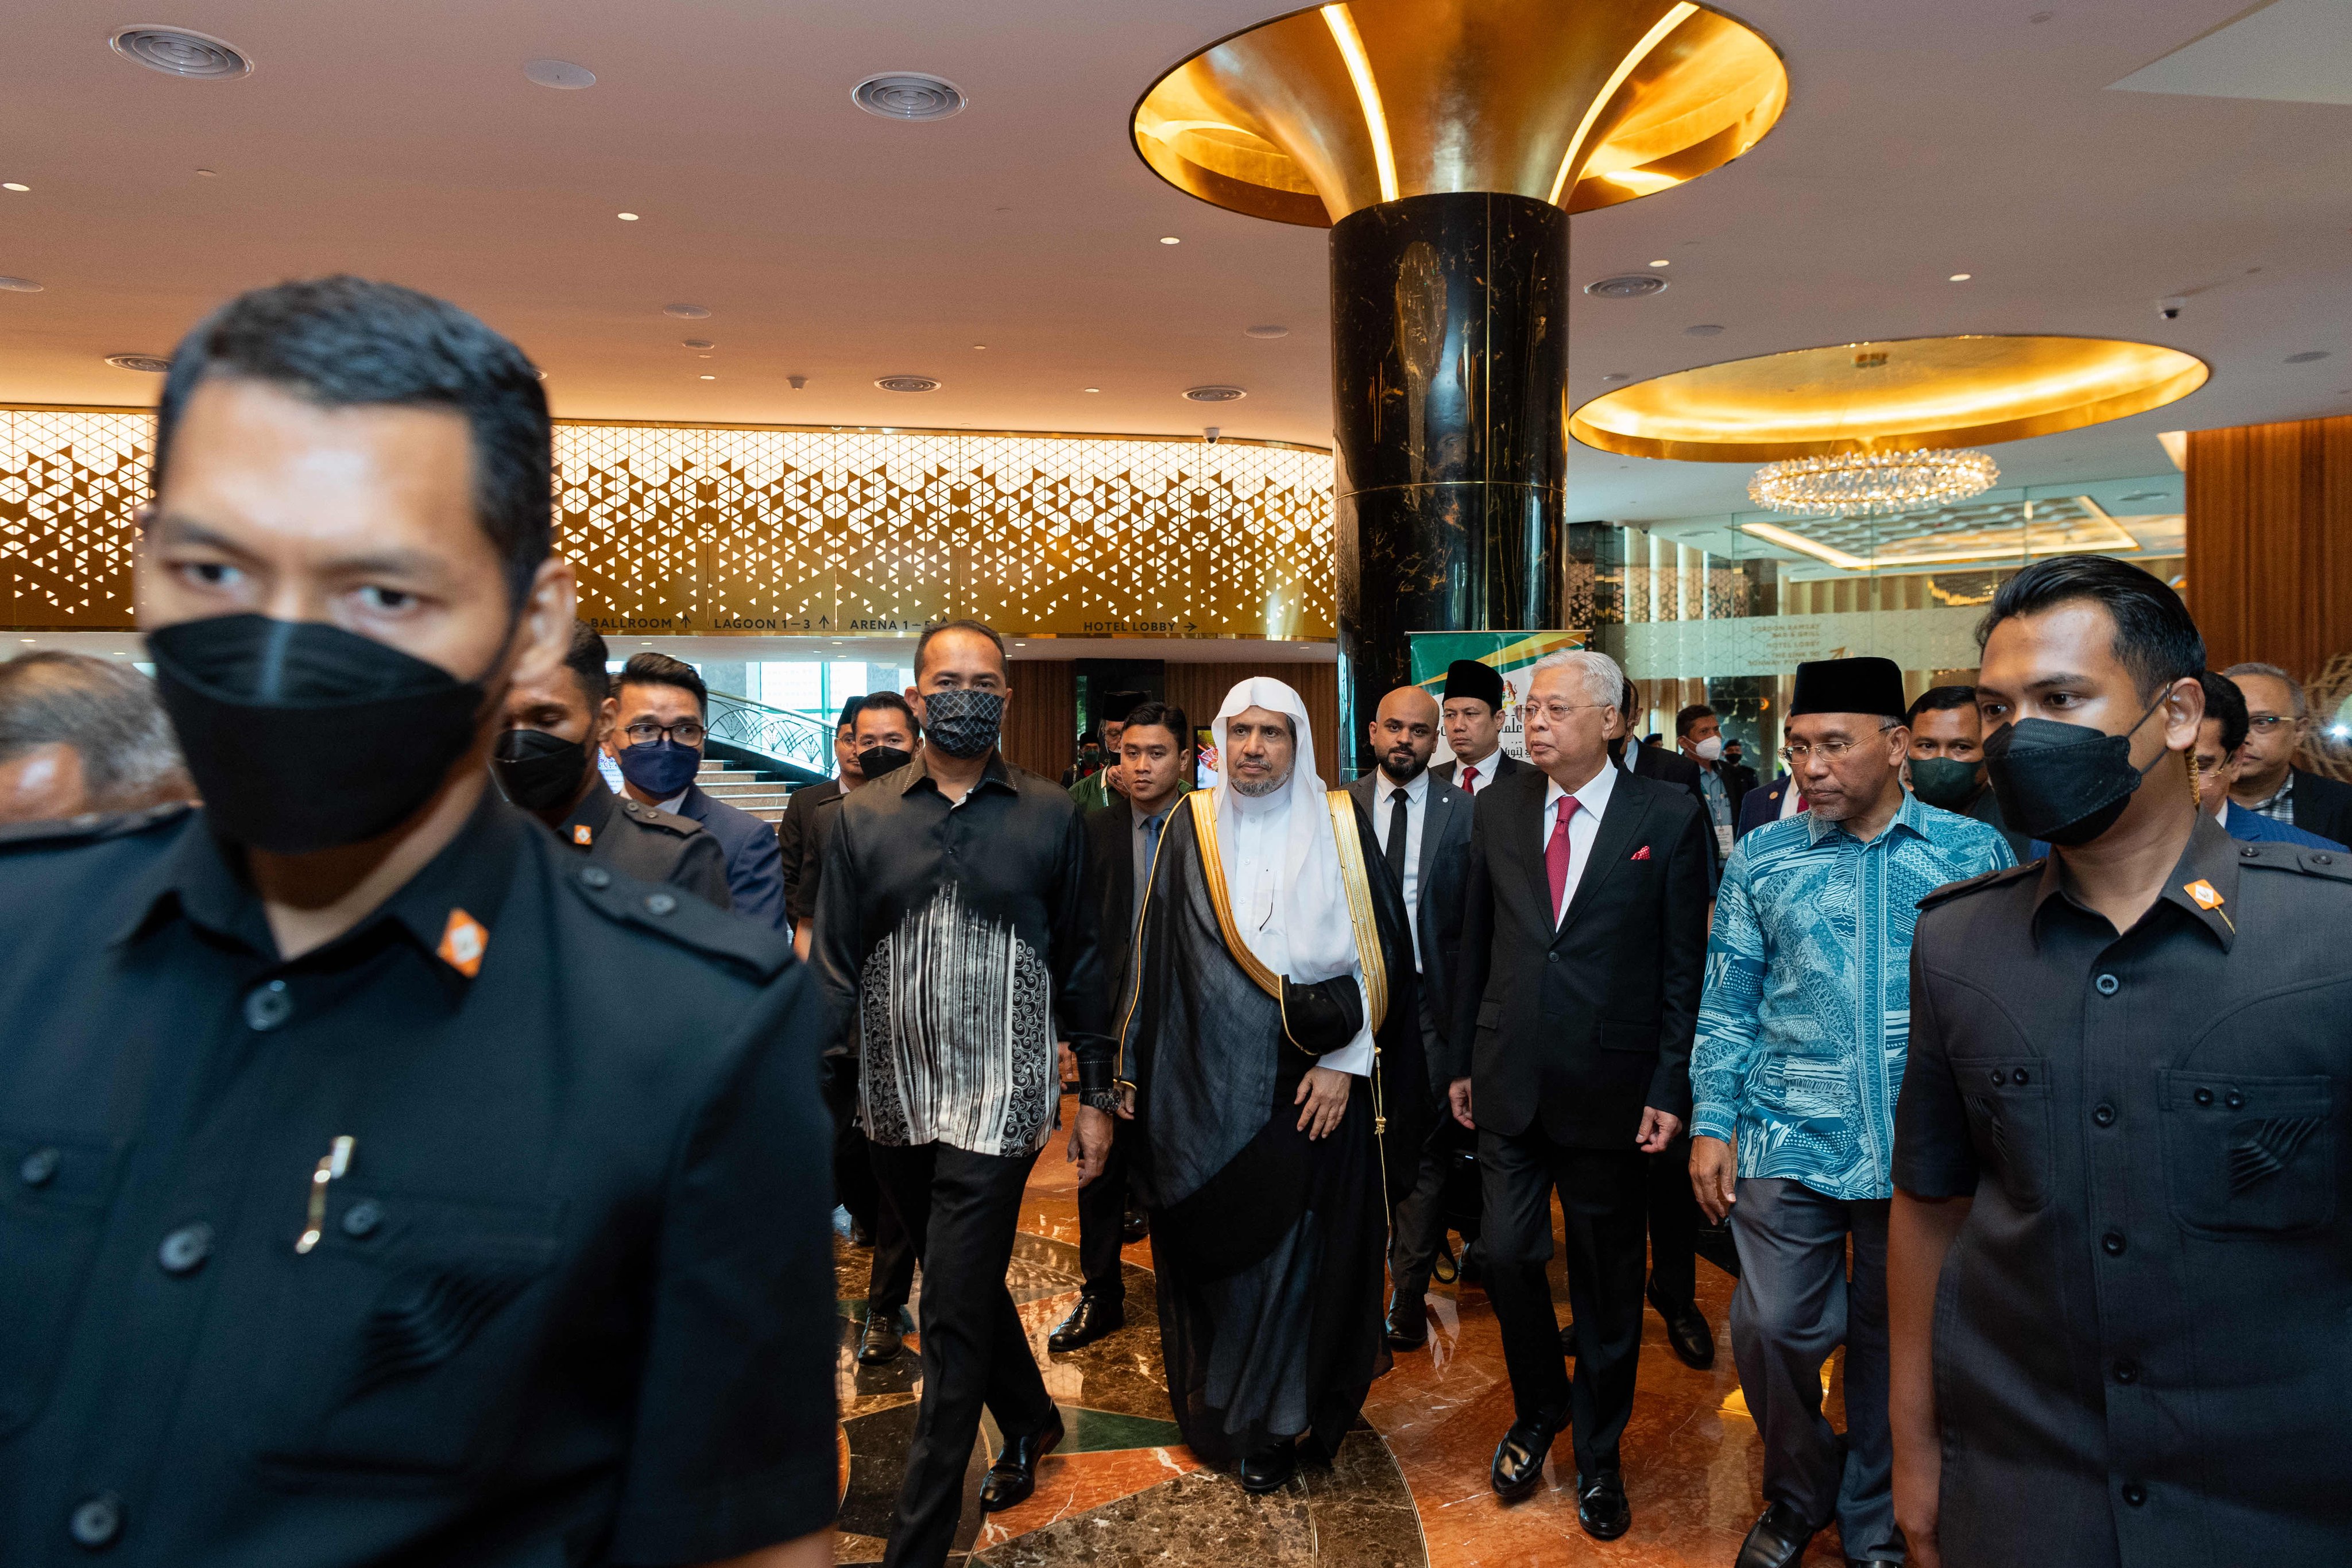 وزیر اعظم ملائیشیا : ہمیں فخر ہےکہ رابطہ عالم اسلامی نے کانفرنس کی میزبانی کے لئے ملائیشیا کا انتخاب کیا ہے